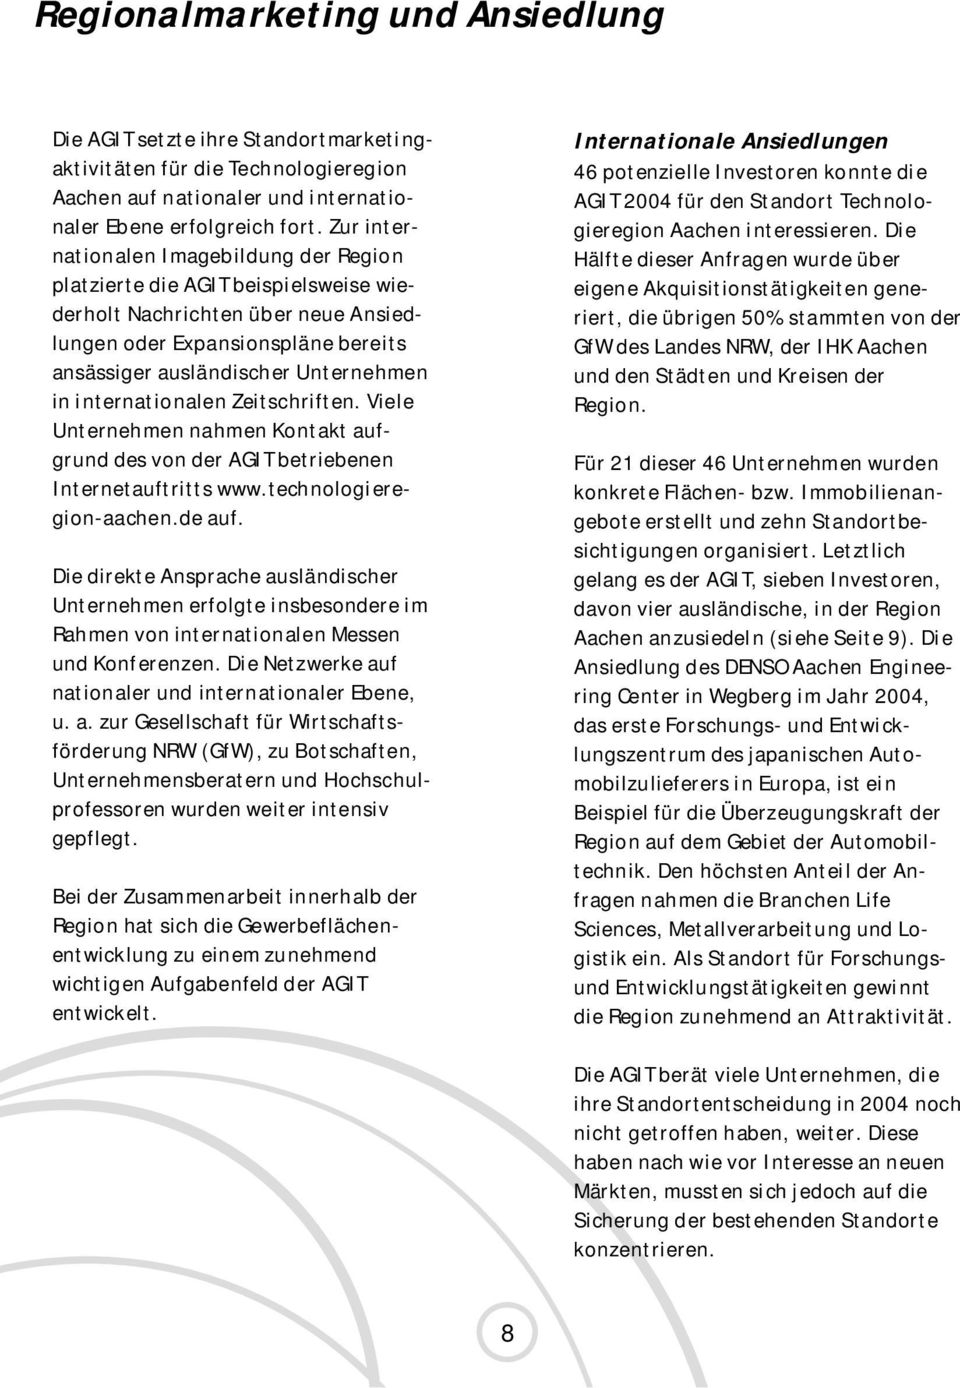 internationalen Zeitschriften. Viele Unternehmen nahmen Kontakt aufgrund des von der AGIT betriebenen Internetauftritts www.technologieregion-aachen.de auf.